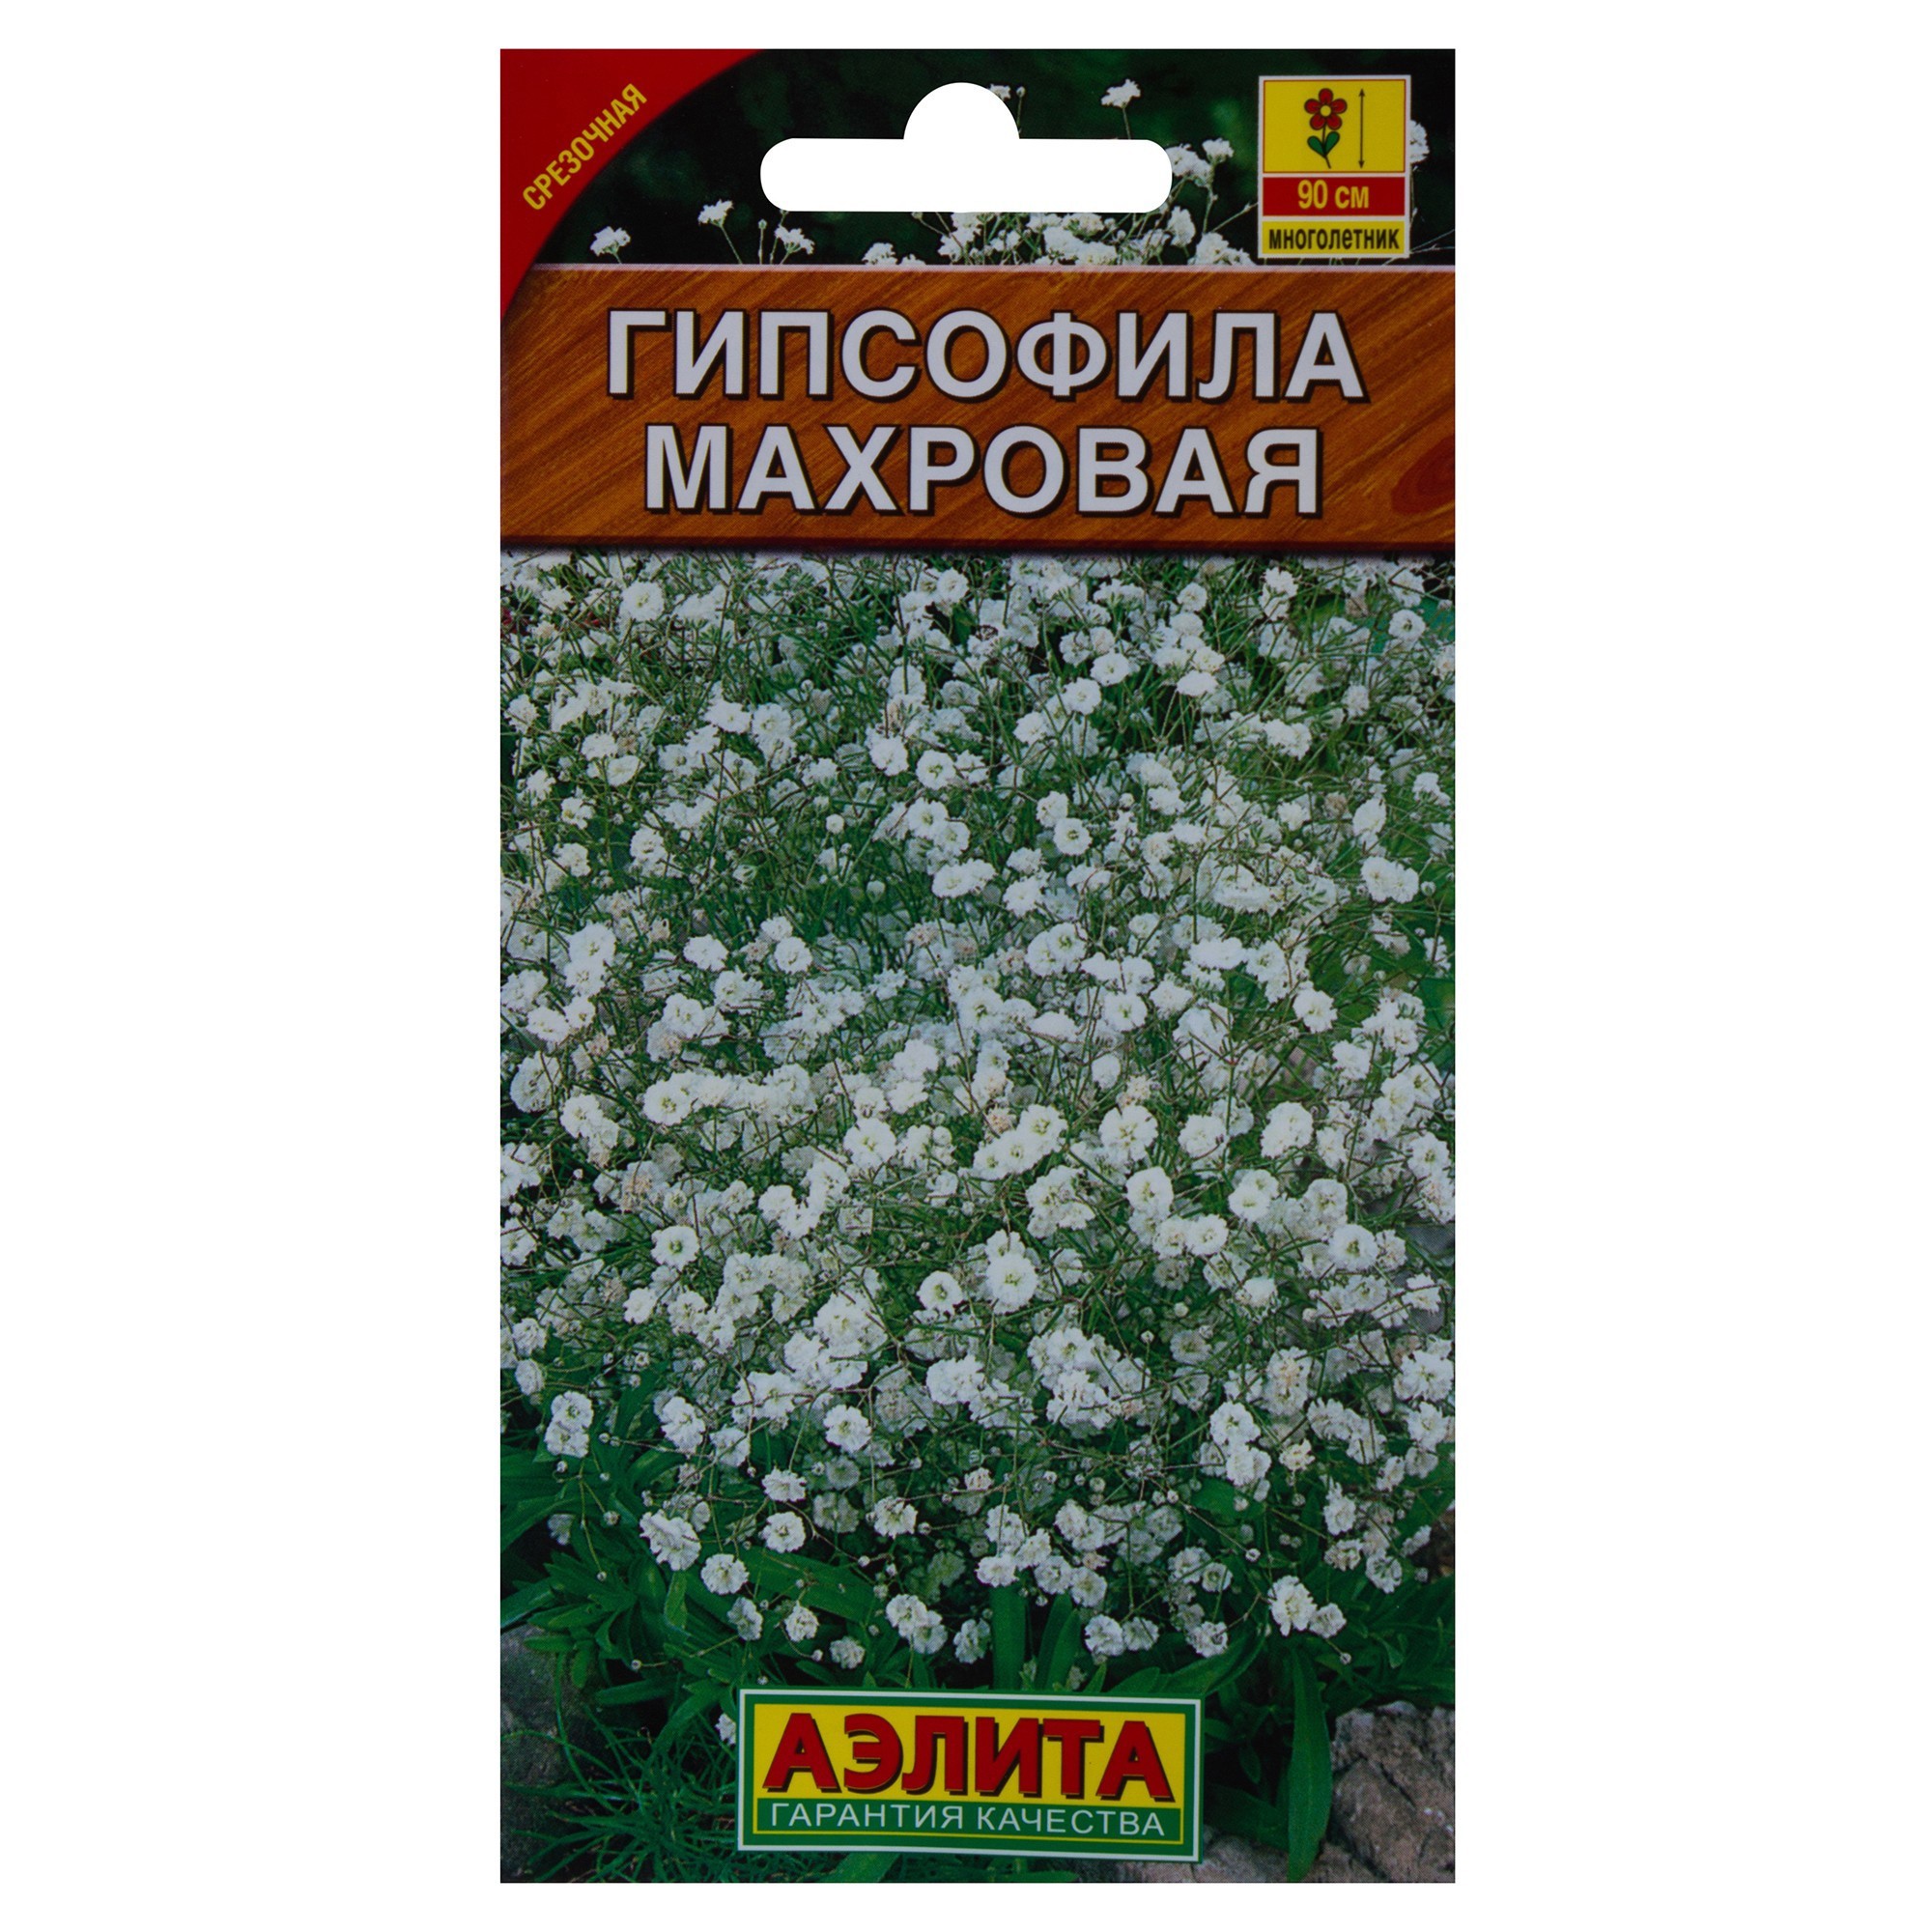  цветов Гипсофила махровая белая Аэлита по цене 15 ₽/шт.  в .